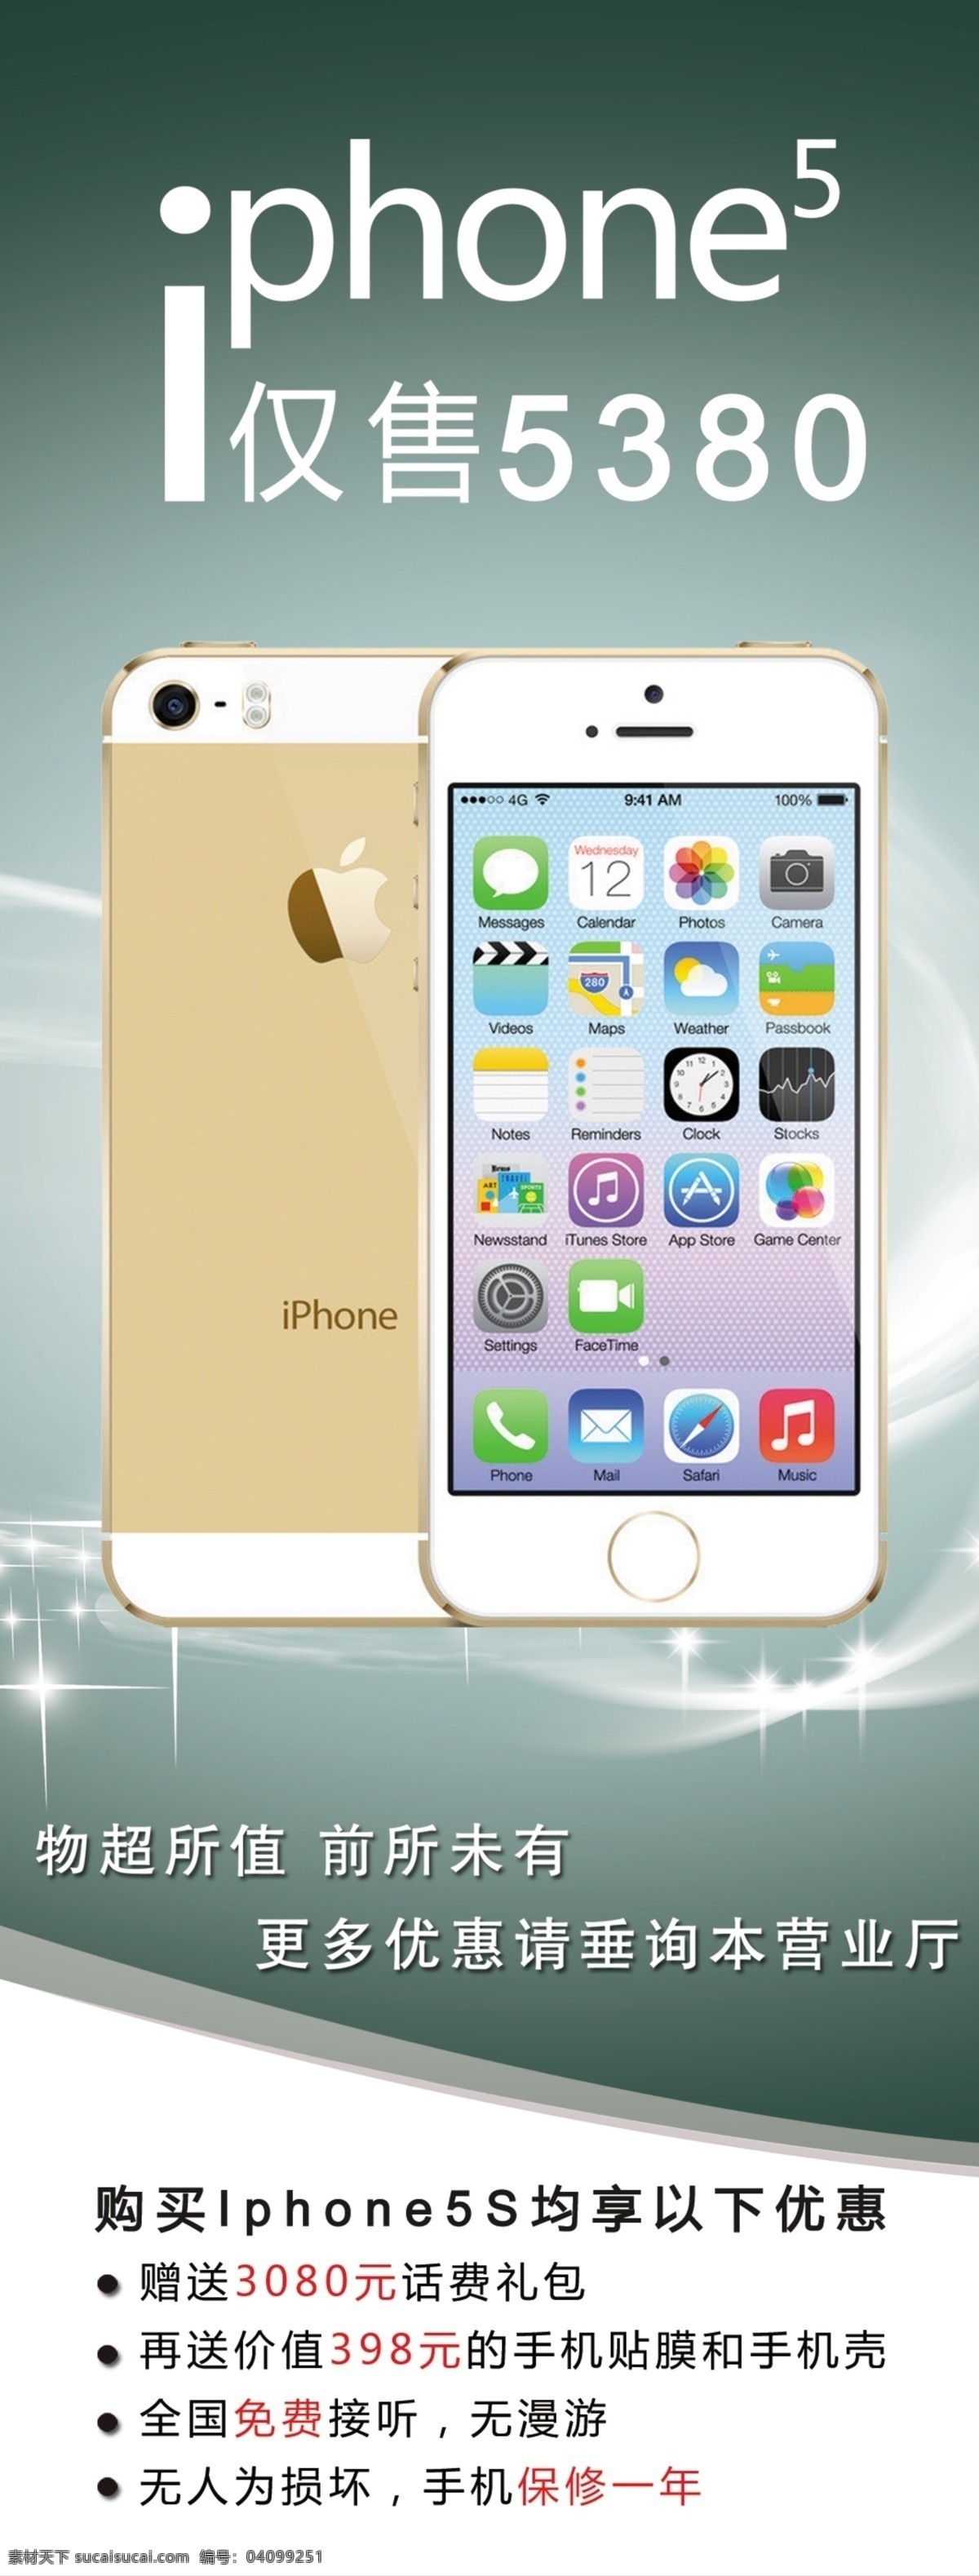 iphone5s 促销 电信 广告设计模板 苹果手机 源文件 展板模板 展架 模板下载 手机促销展板 矢量图 现代科技